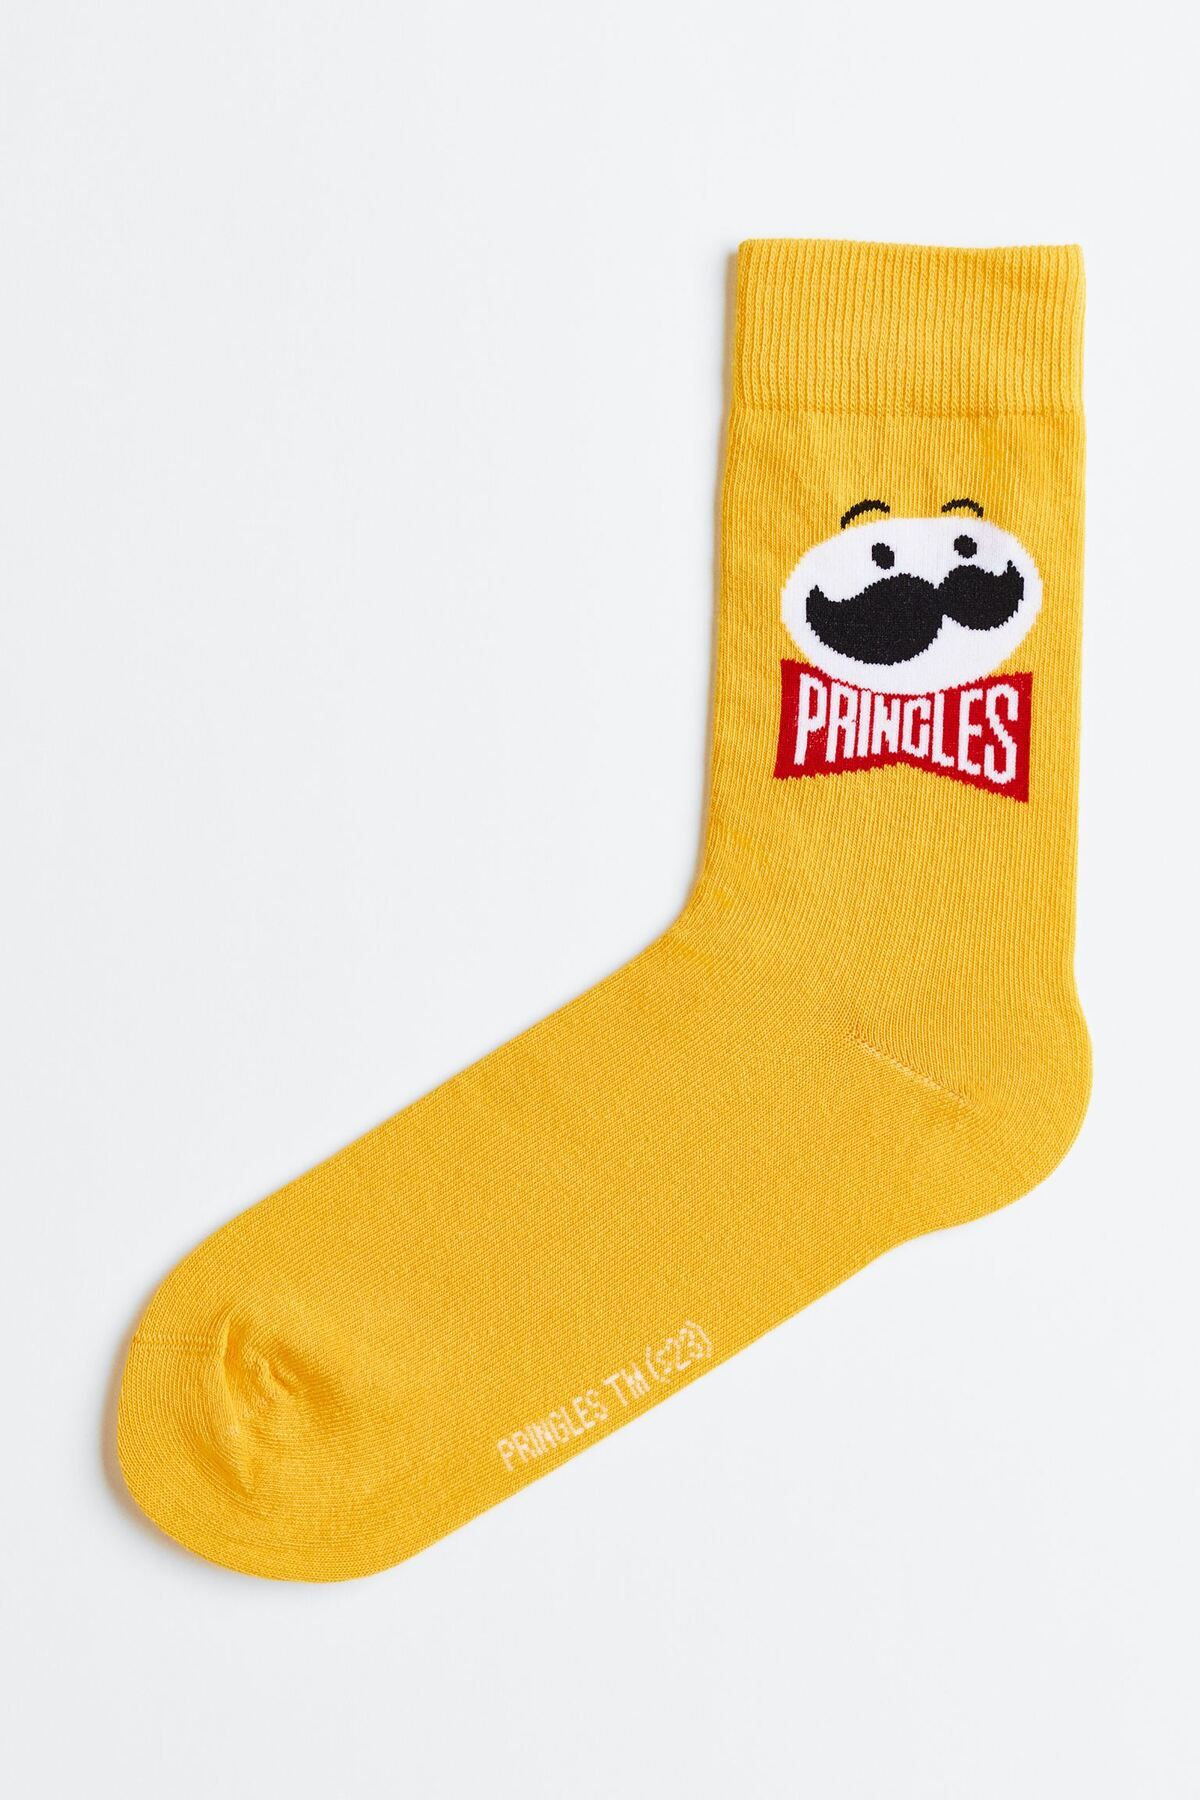 Happy Socks Pringles Sarı Uzun Unisex Çorap